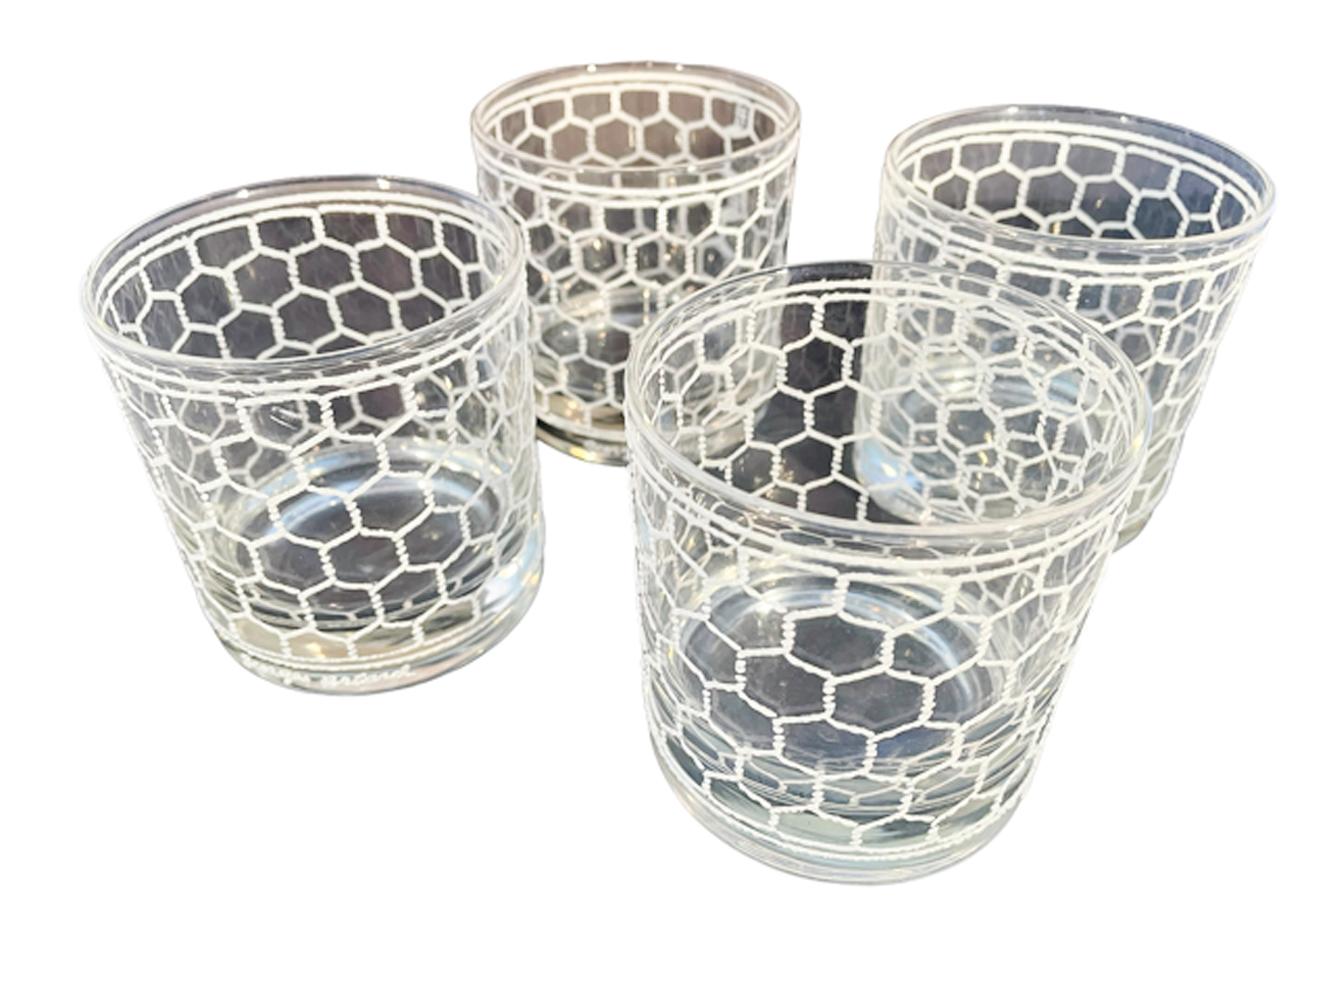 Quatre verres à whisky signés Georges Briard en verre transparent avec un décor en relief en émail blanc texturé à l'image d'un grillage.